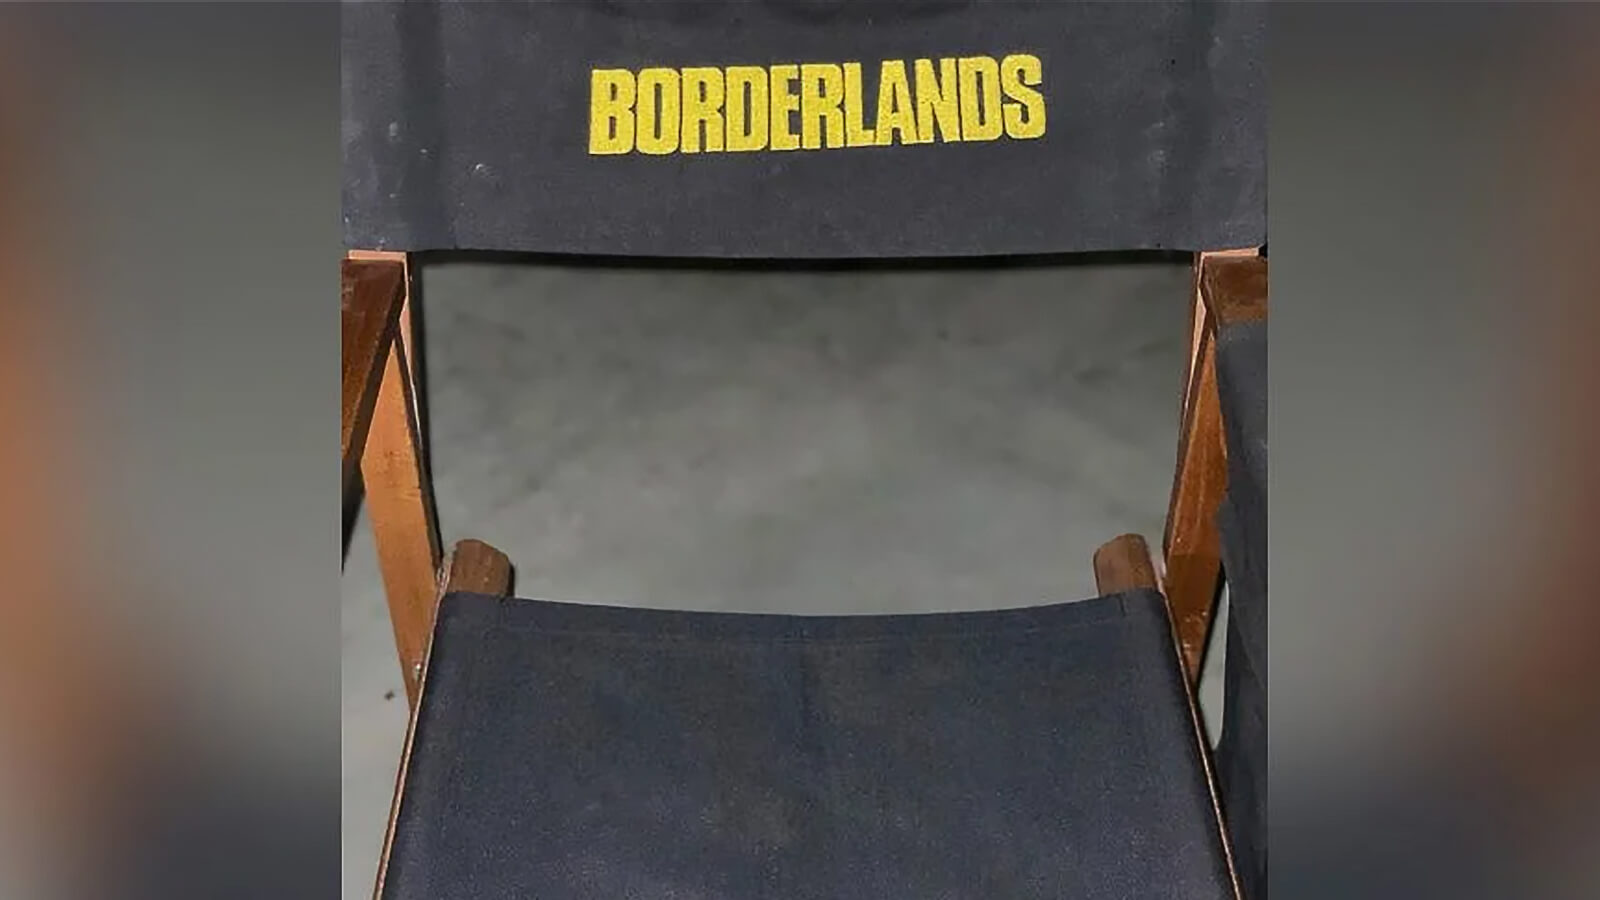 Режиссер Экранизации Borderlands Поделился Новым Закулисным Изображением и Некоторыми Подробностями